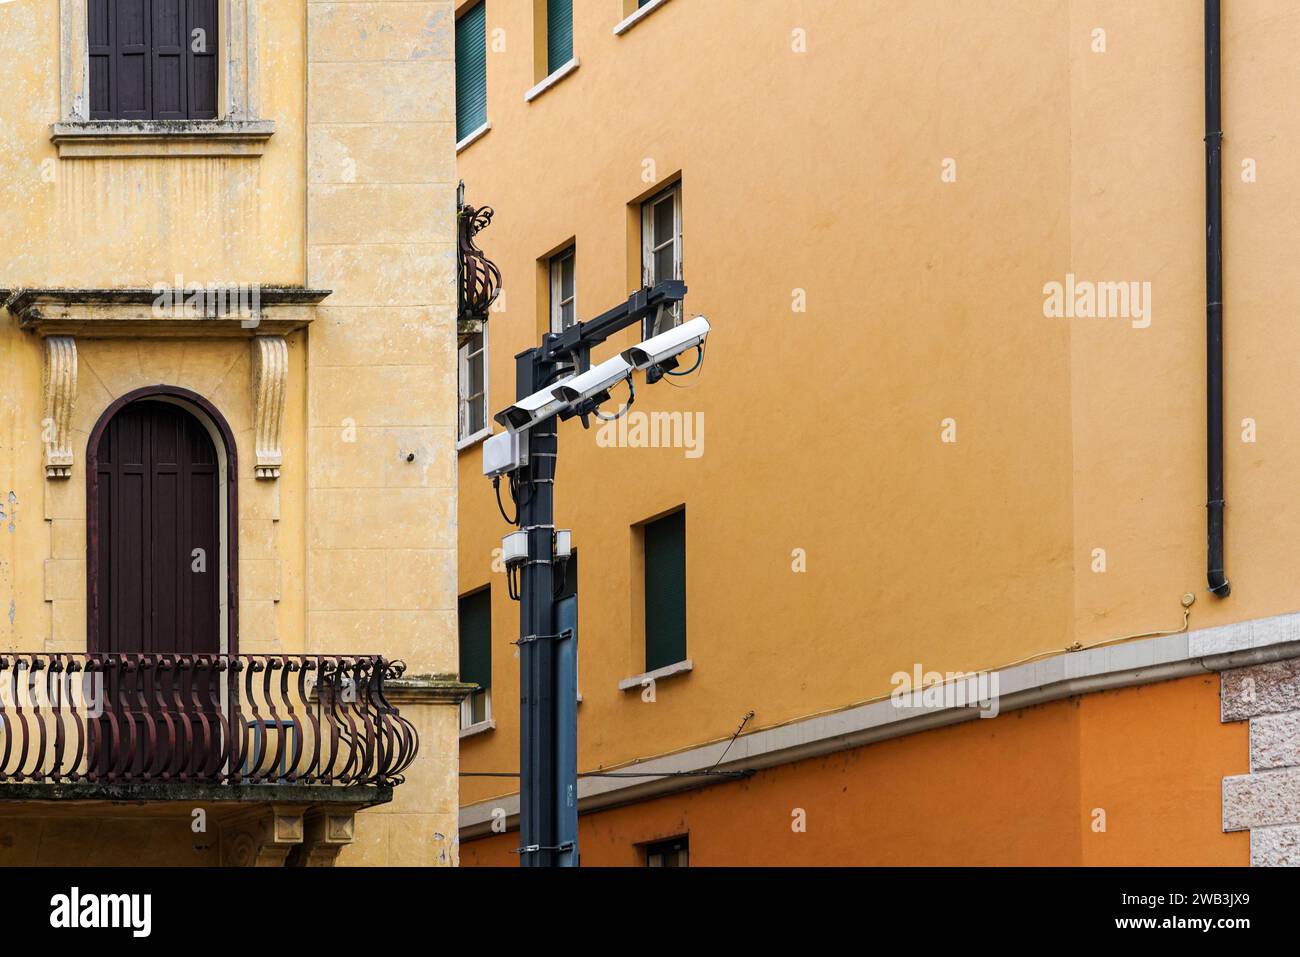 Sorveglianza municipale con diverse telecamere di sorveglianza davanti al muro di un edificio residenziale che controlla una piazza. Foto Stock